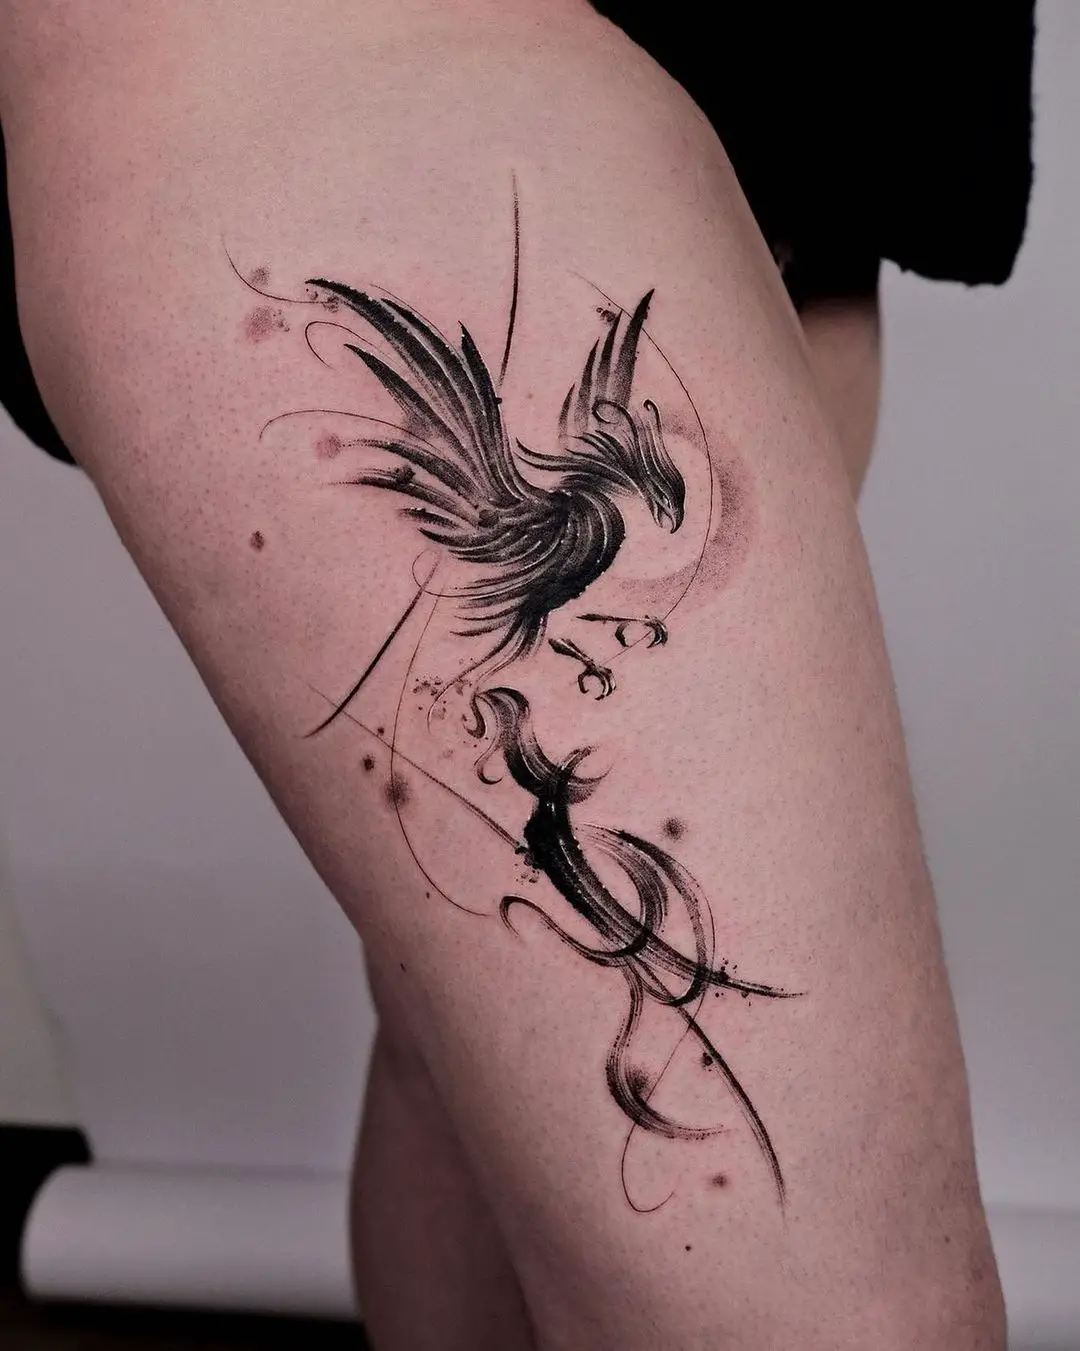 11+ Minimalist Phoenix Tattoo Small Ideas That Will Blow Your Mind! - alexie